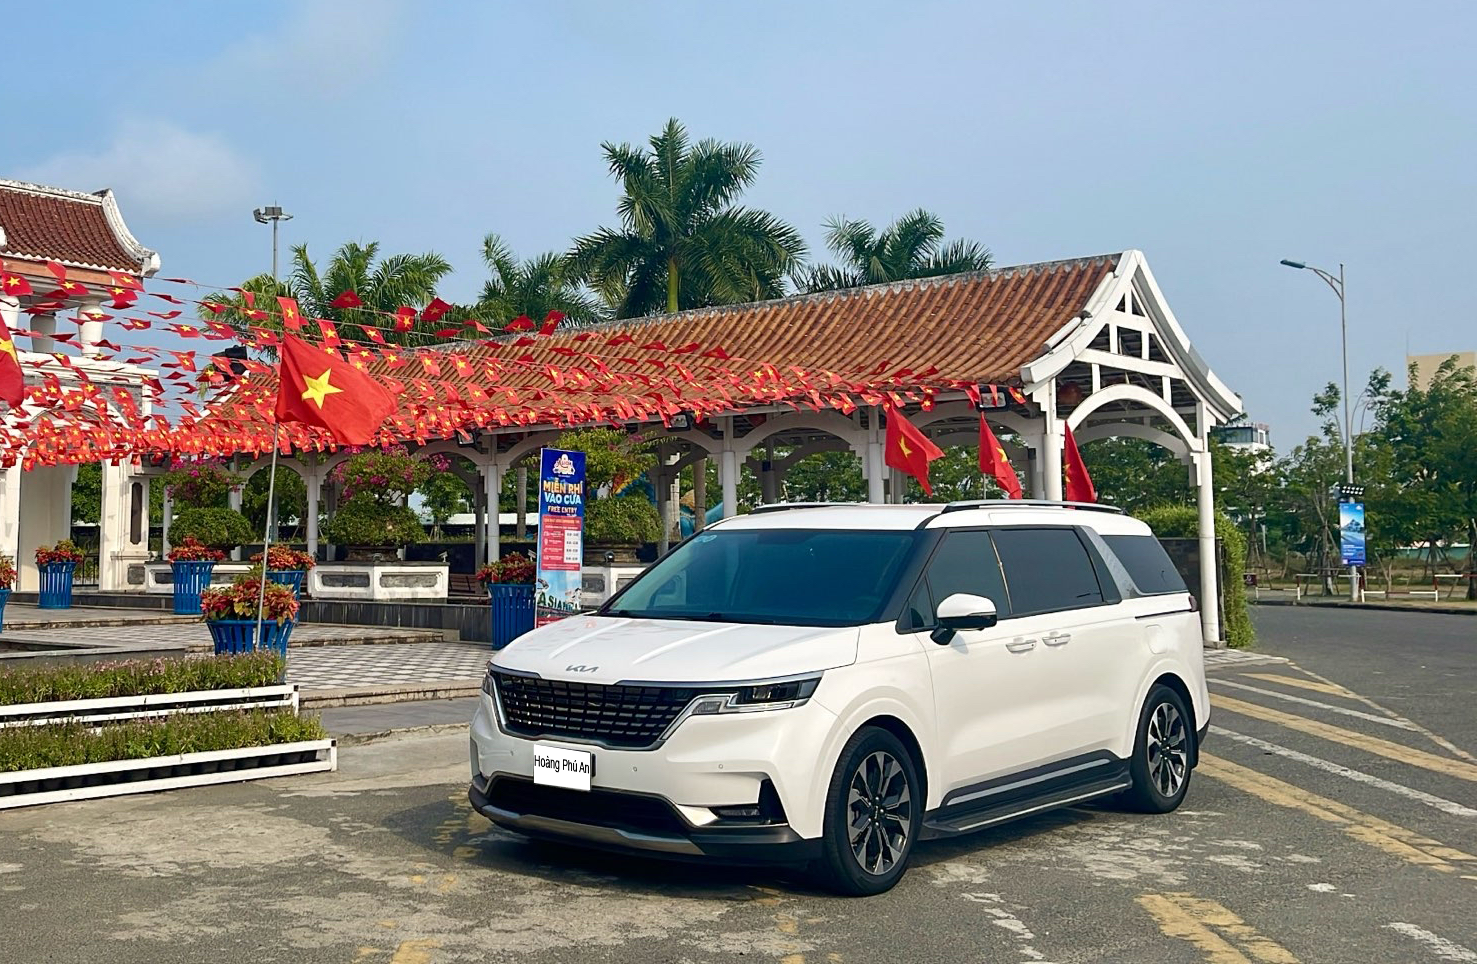 Dịch vụ thuê xe đưa đón sân bay - khách sạn nội thành của Hoàng Phú An mang đến cho bạn một trải nghiệm di chuyển thuận tiện, an toàn và tiết kiệm. 